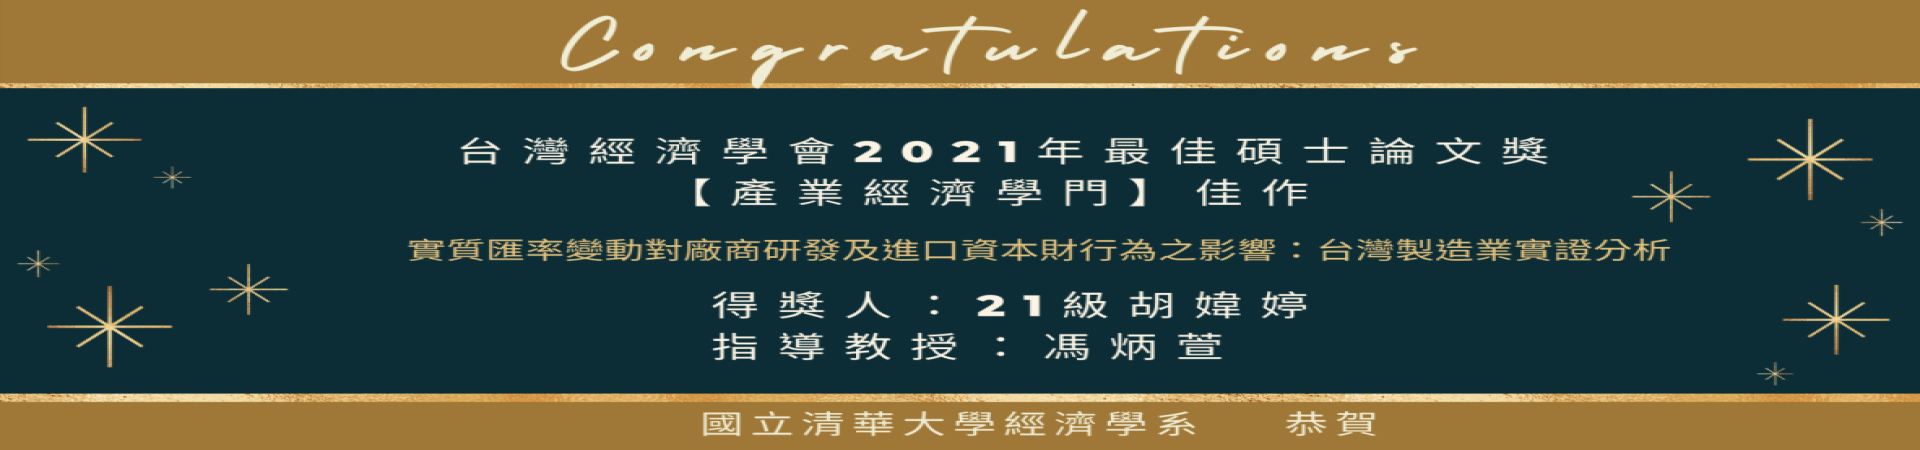 台灣經濟學會2021年最佳碩士論文獎_21級胡瑋婷